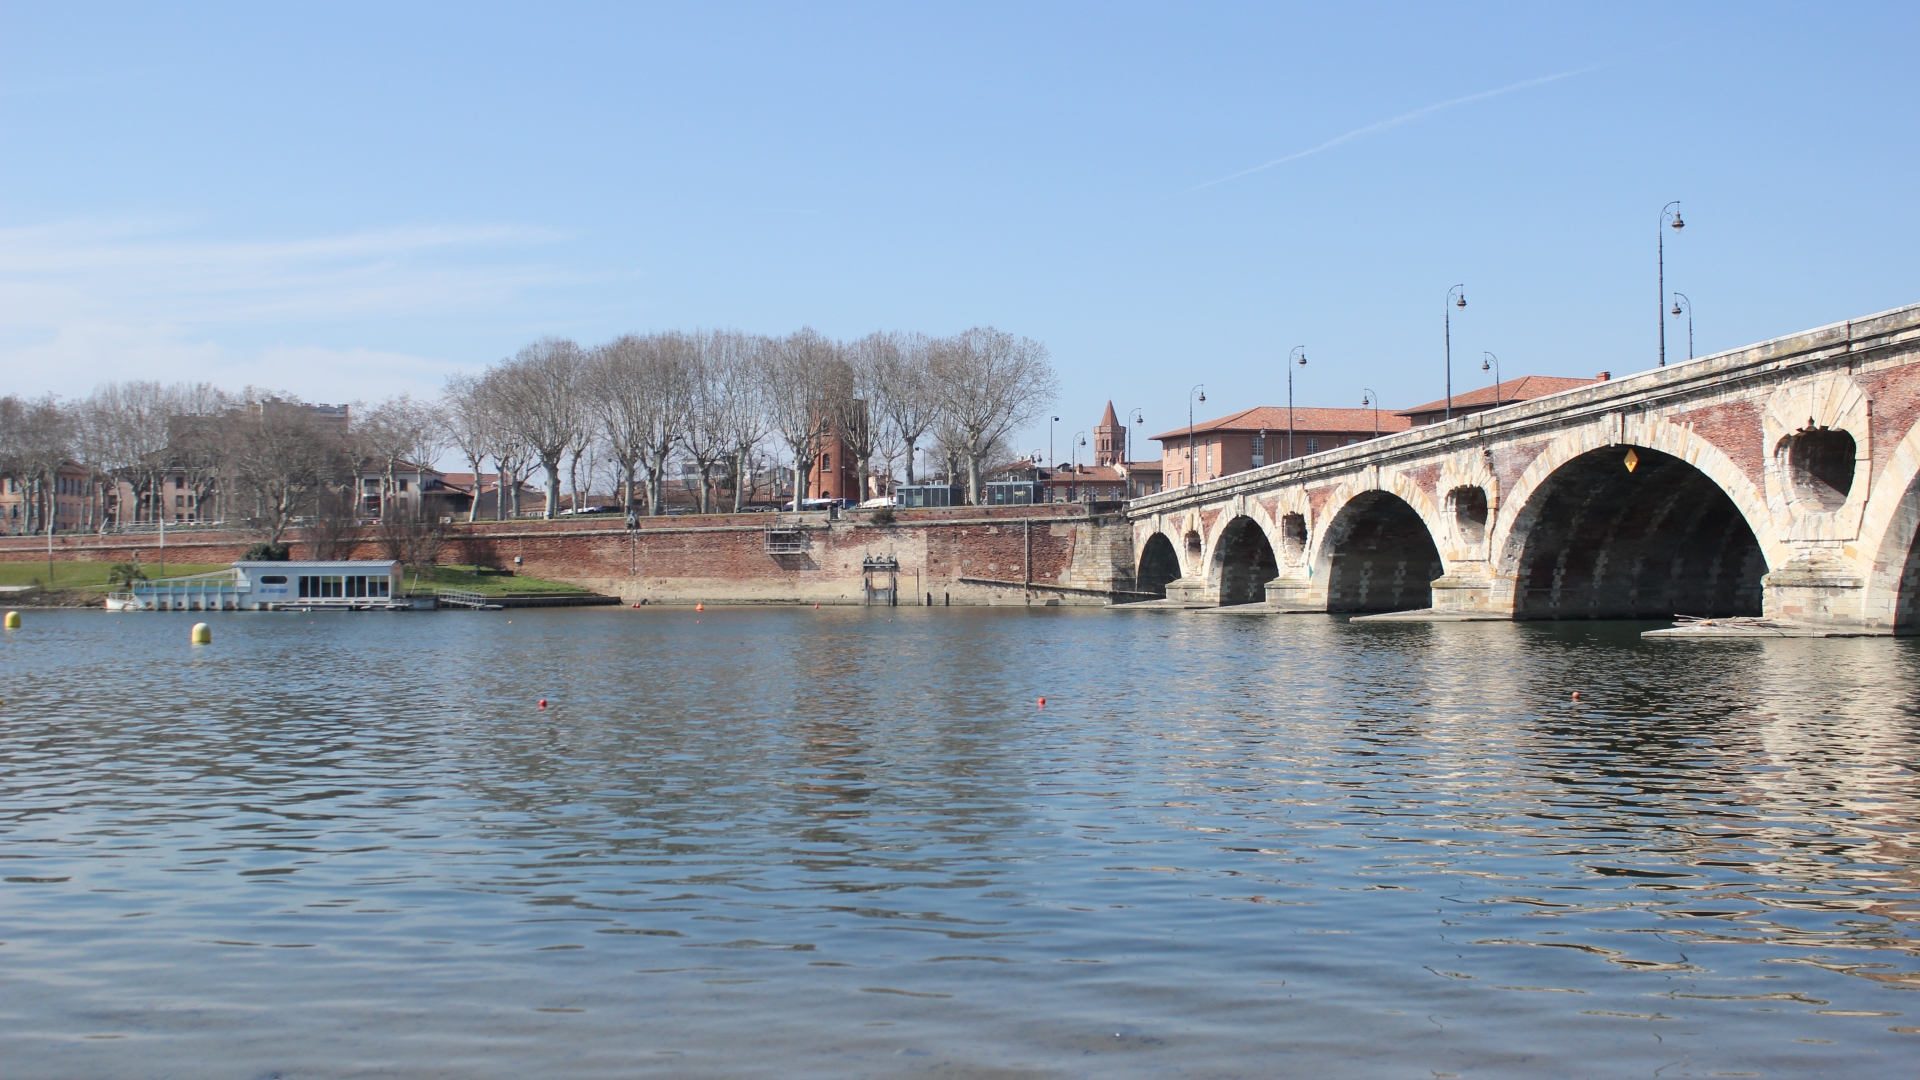 Baixar papel de parede para celular de Pont Neuf Toulouse, Pontes, Feito Pelo Homem gratuito.